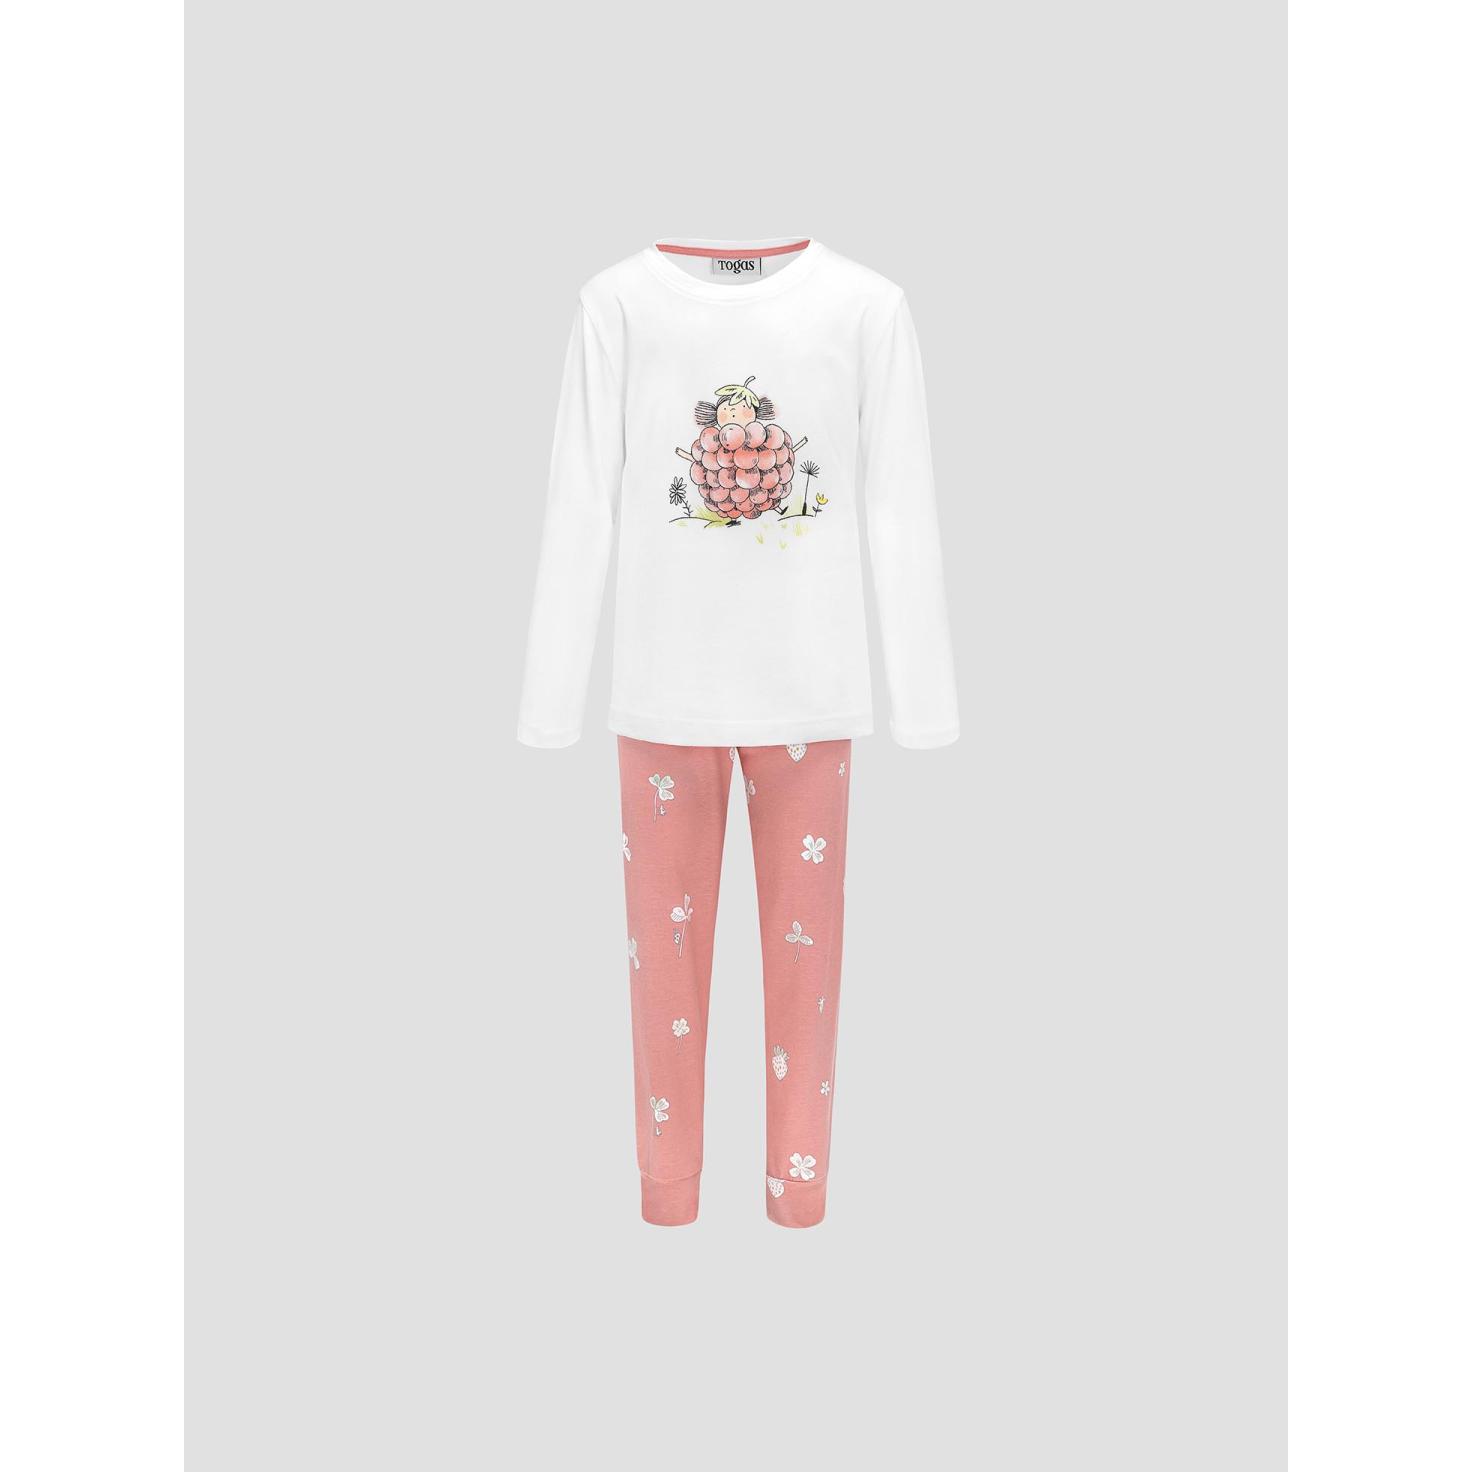 Пижама для девочек Kids by togas Стробби бело-розовый 104-110 см пижама для девочек kids by togas стробби бело розовый 104 110 см